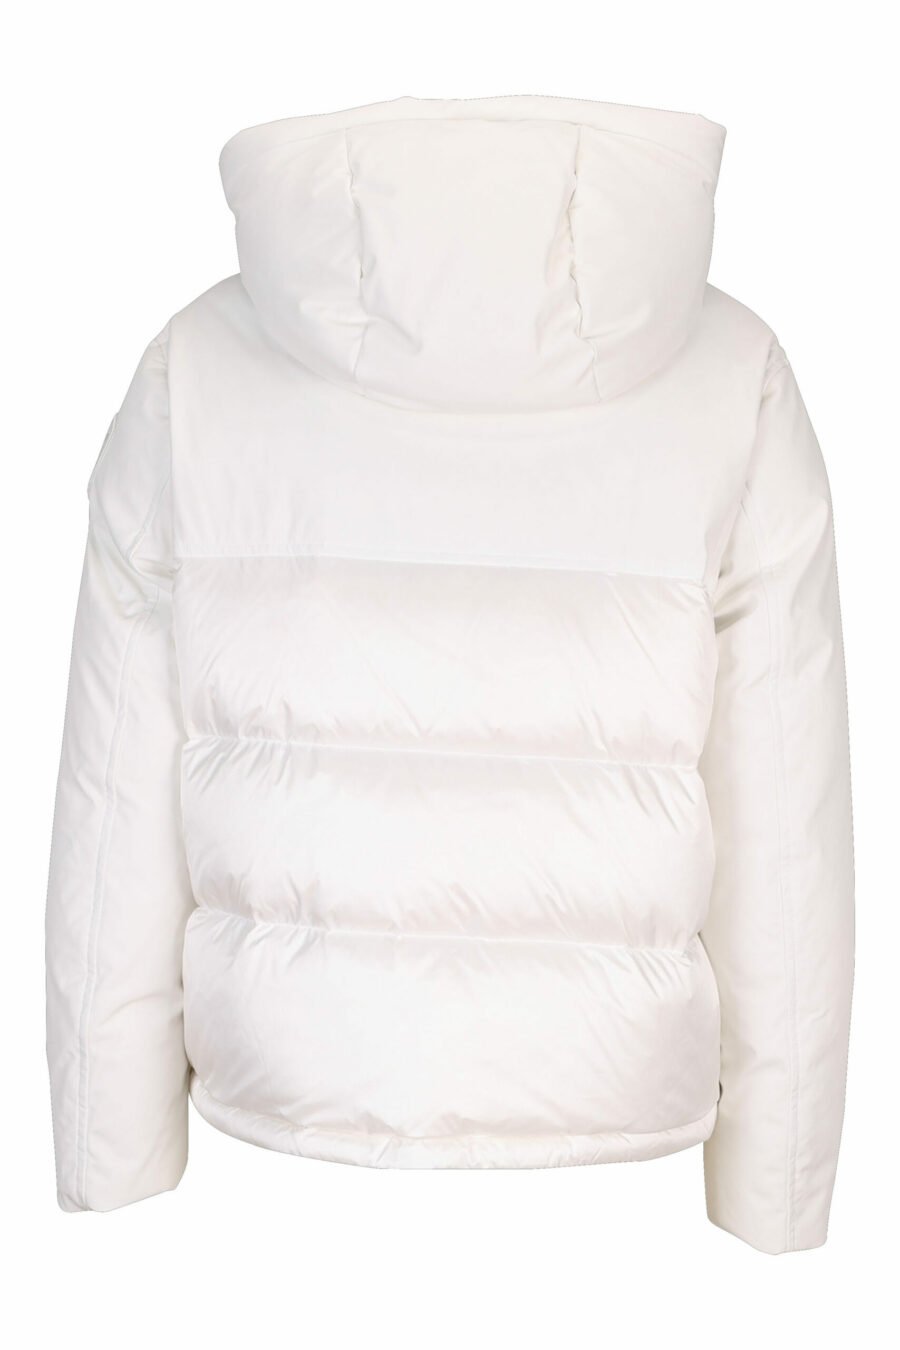 Veste blanche à capuche avec lignes droites et logo - 8058610610753 3 échelle